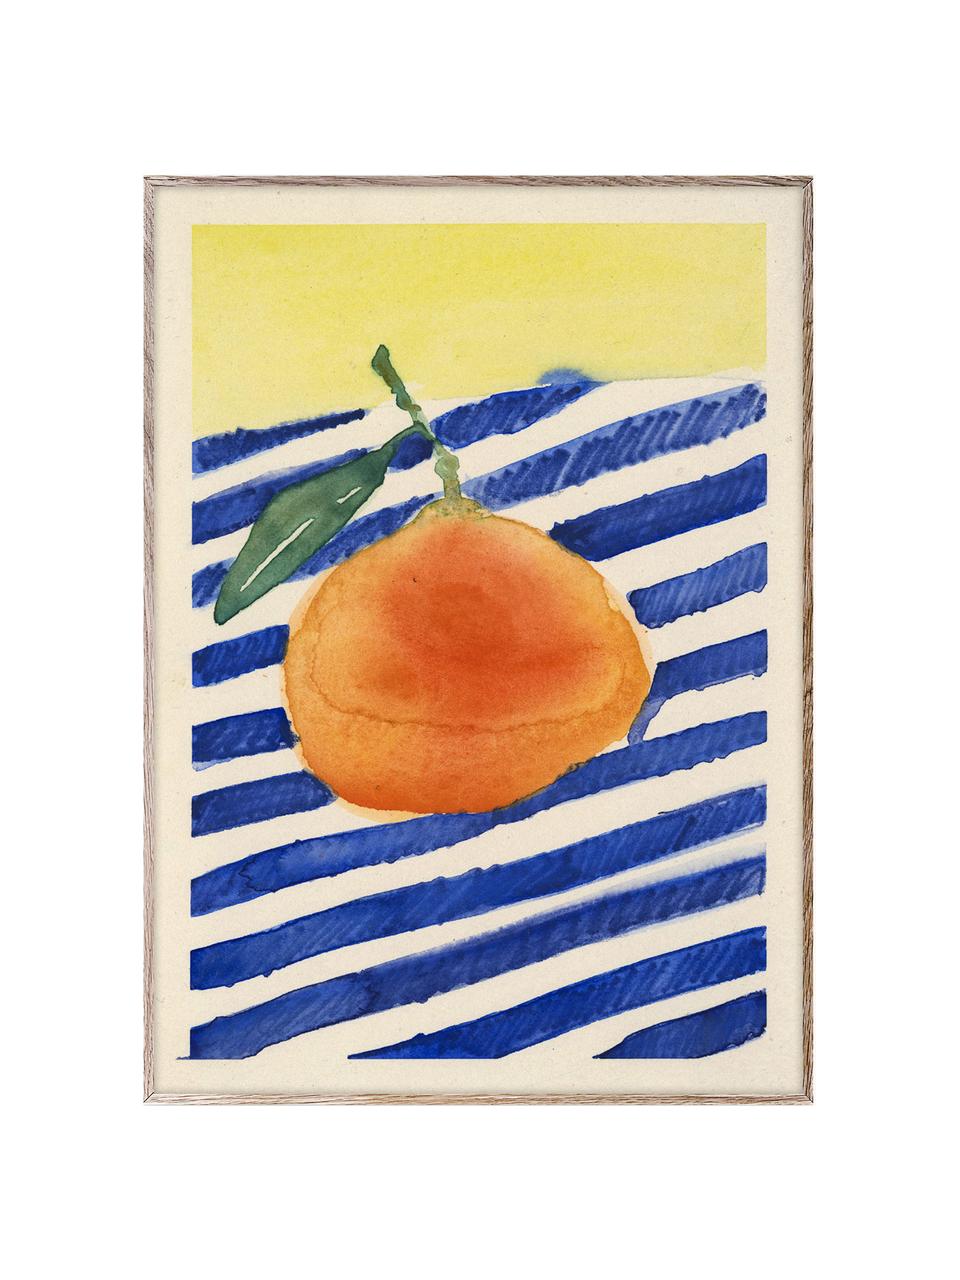 Plakát Orange, 210g matný papír Hahnemühle, digitální tisk s 10 barvami odolnými vůči UV záření, Oranžová, tmavě modrá, světle žlutá, Š 30 cm, V 40 cm